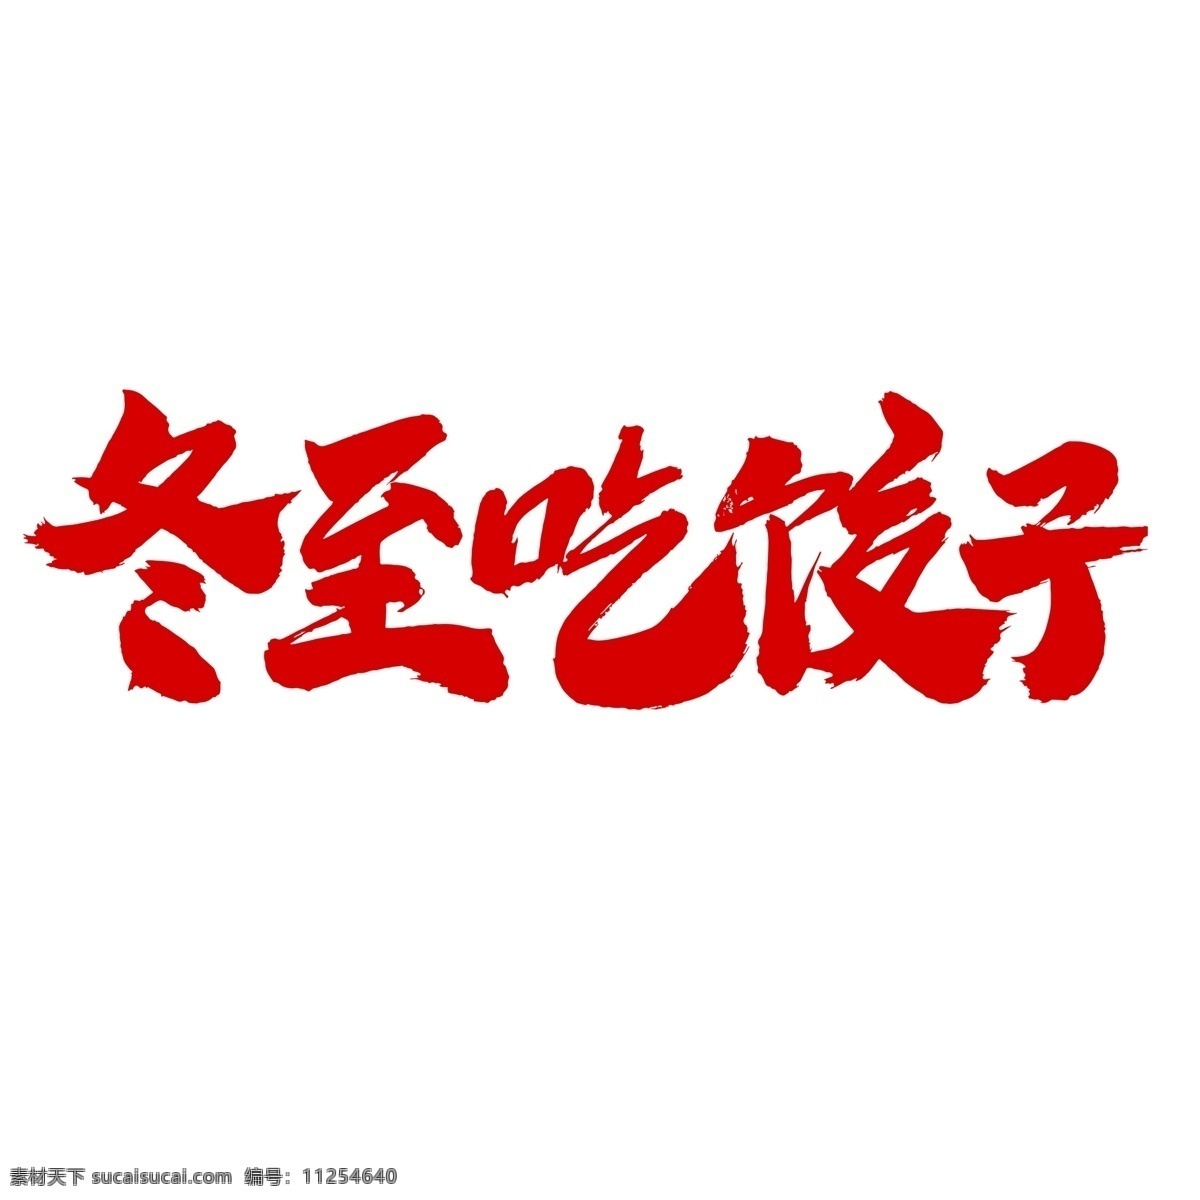 冬至 吃 饺子 艺术 字体 二十四节气 传统节气 传统习俗 中国节气 冬至到